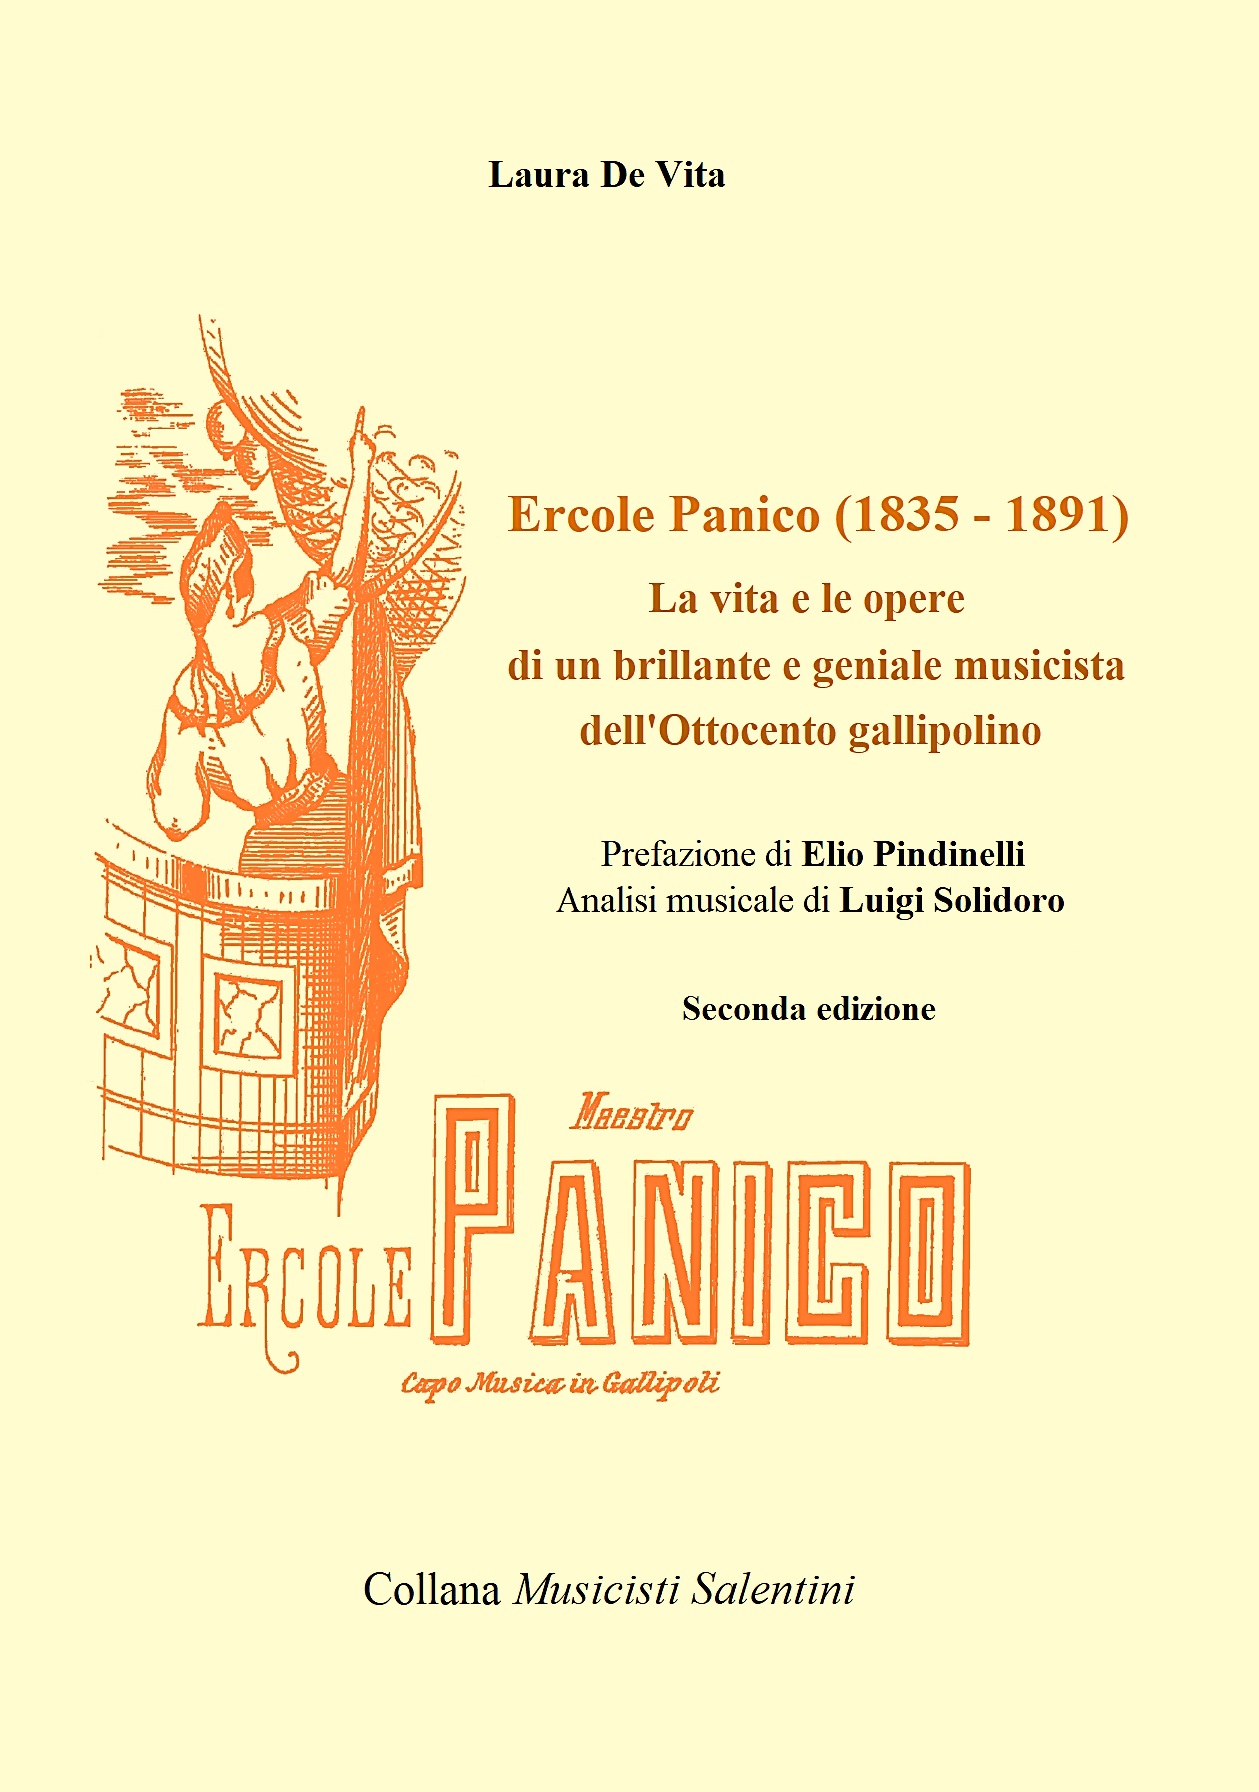 copertina del libro di Luigi Solidoro e Laura De Vita: musicista Ercole Panico